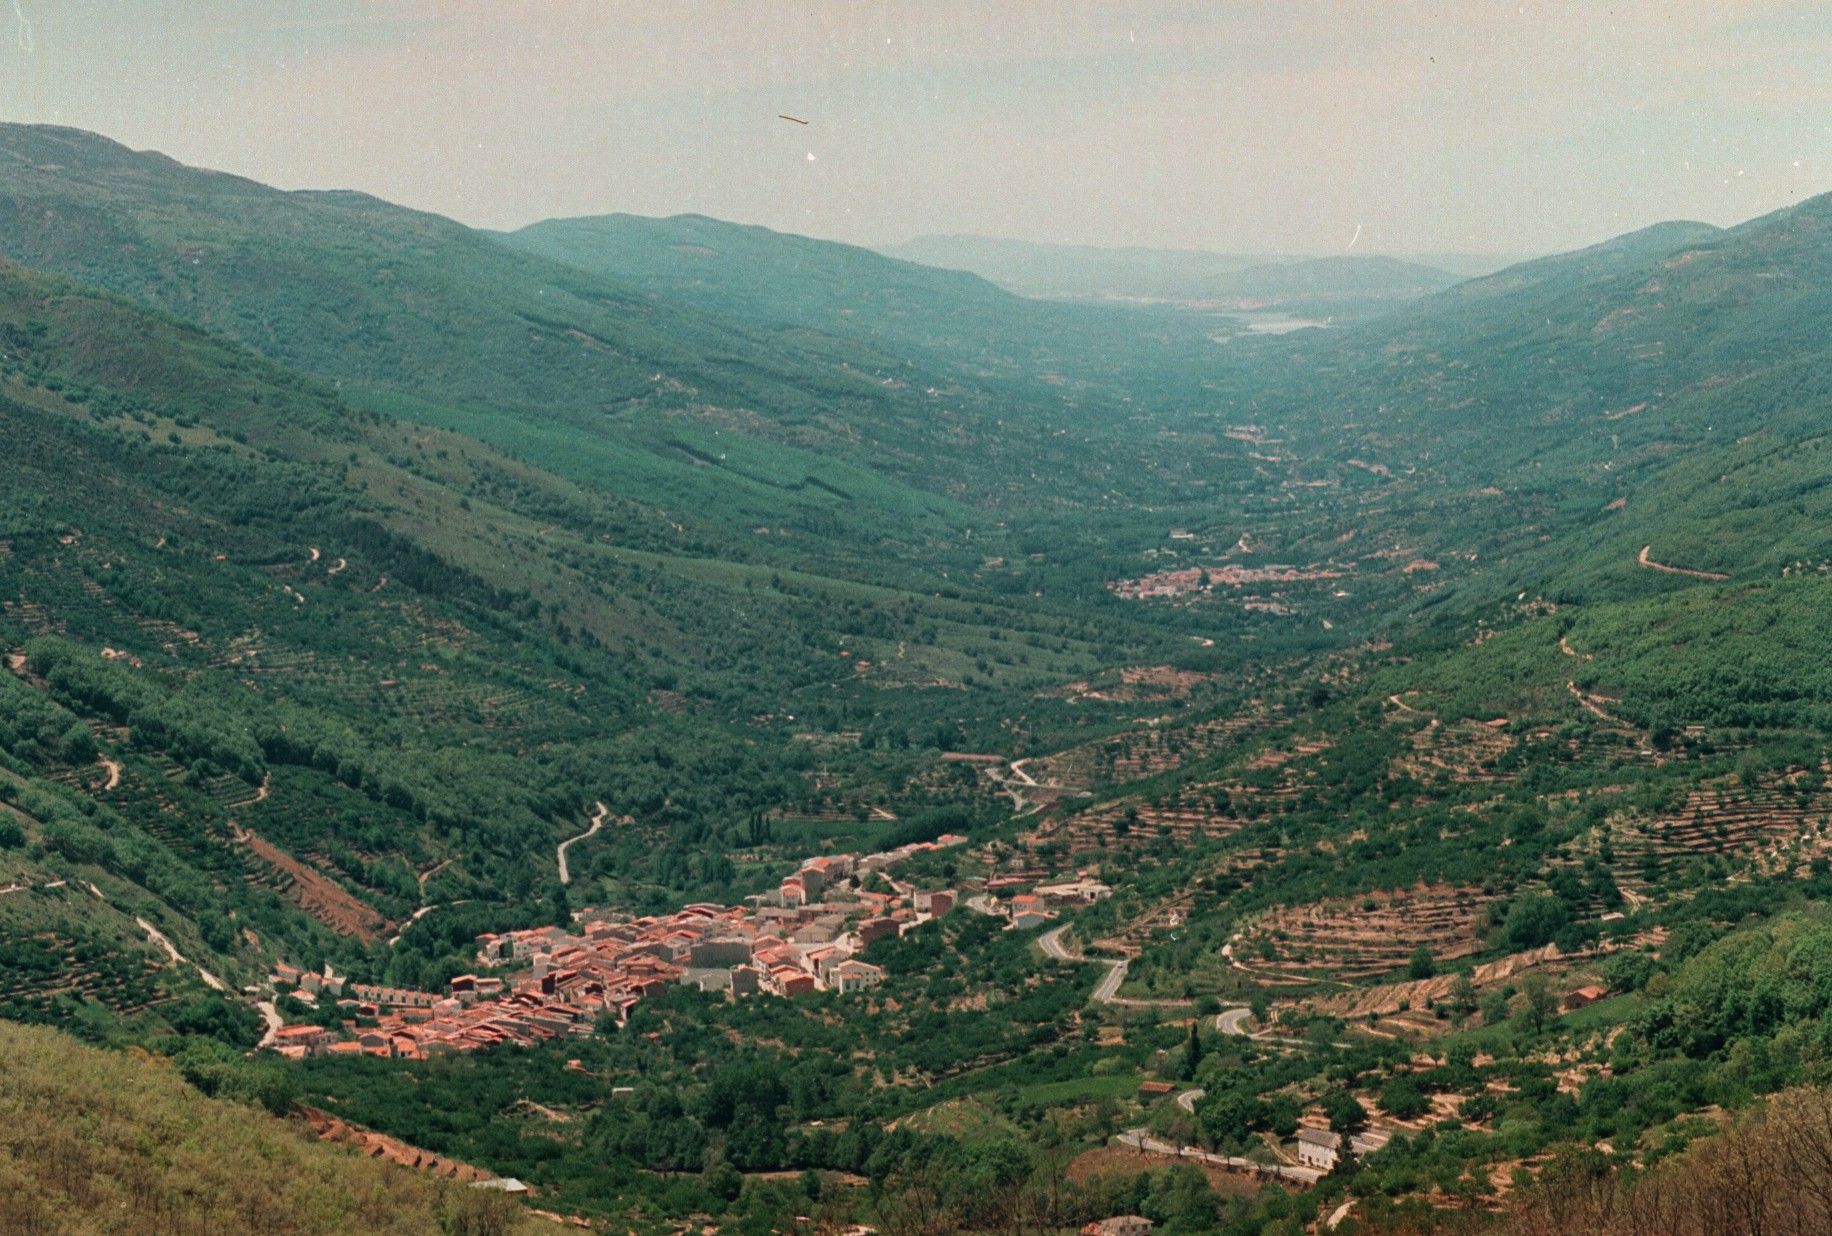 1999. Vista del Valle del Jerte desde el Puerto de Tornavacas.